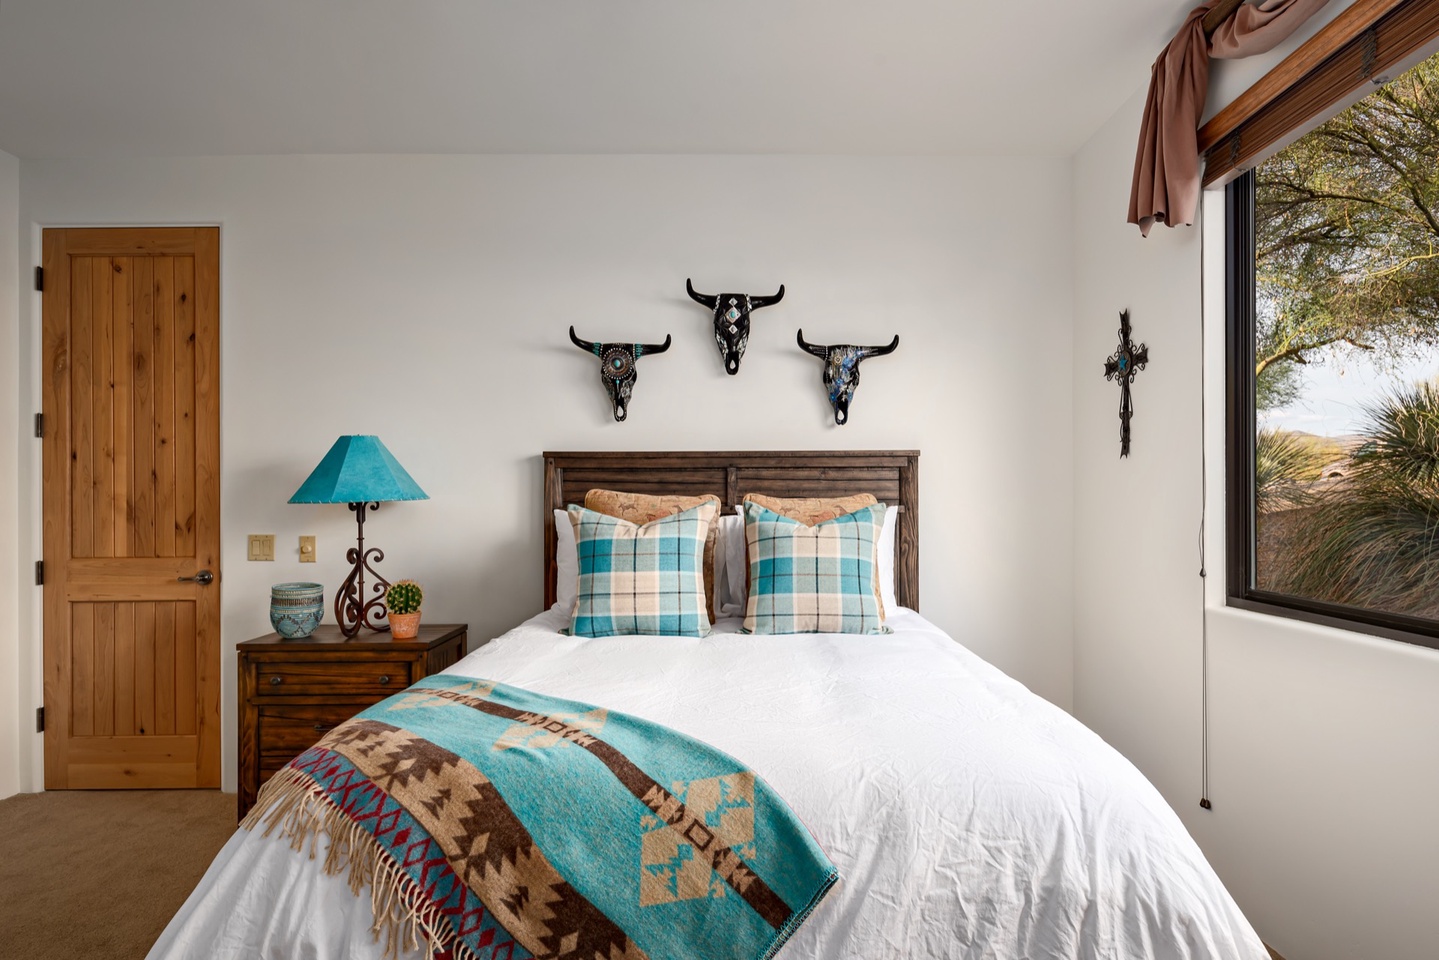 Bedroom 3 - Queen bed - Quality linens